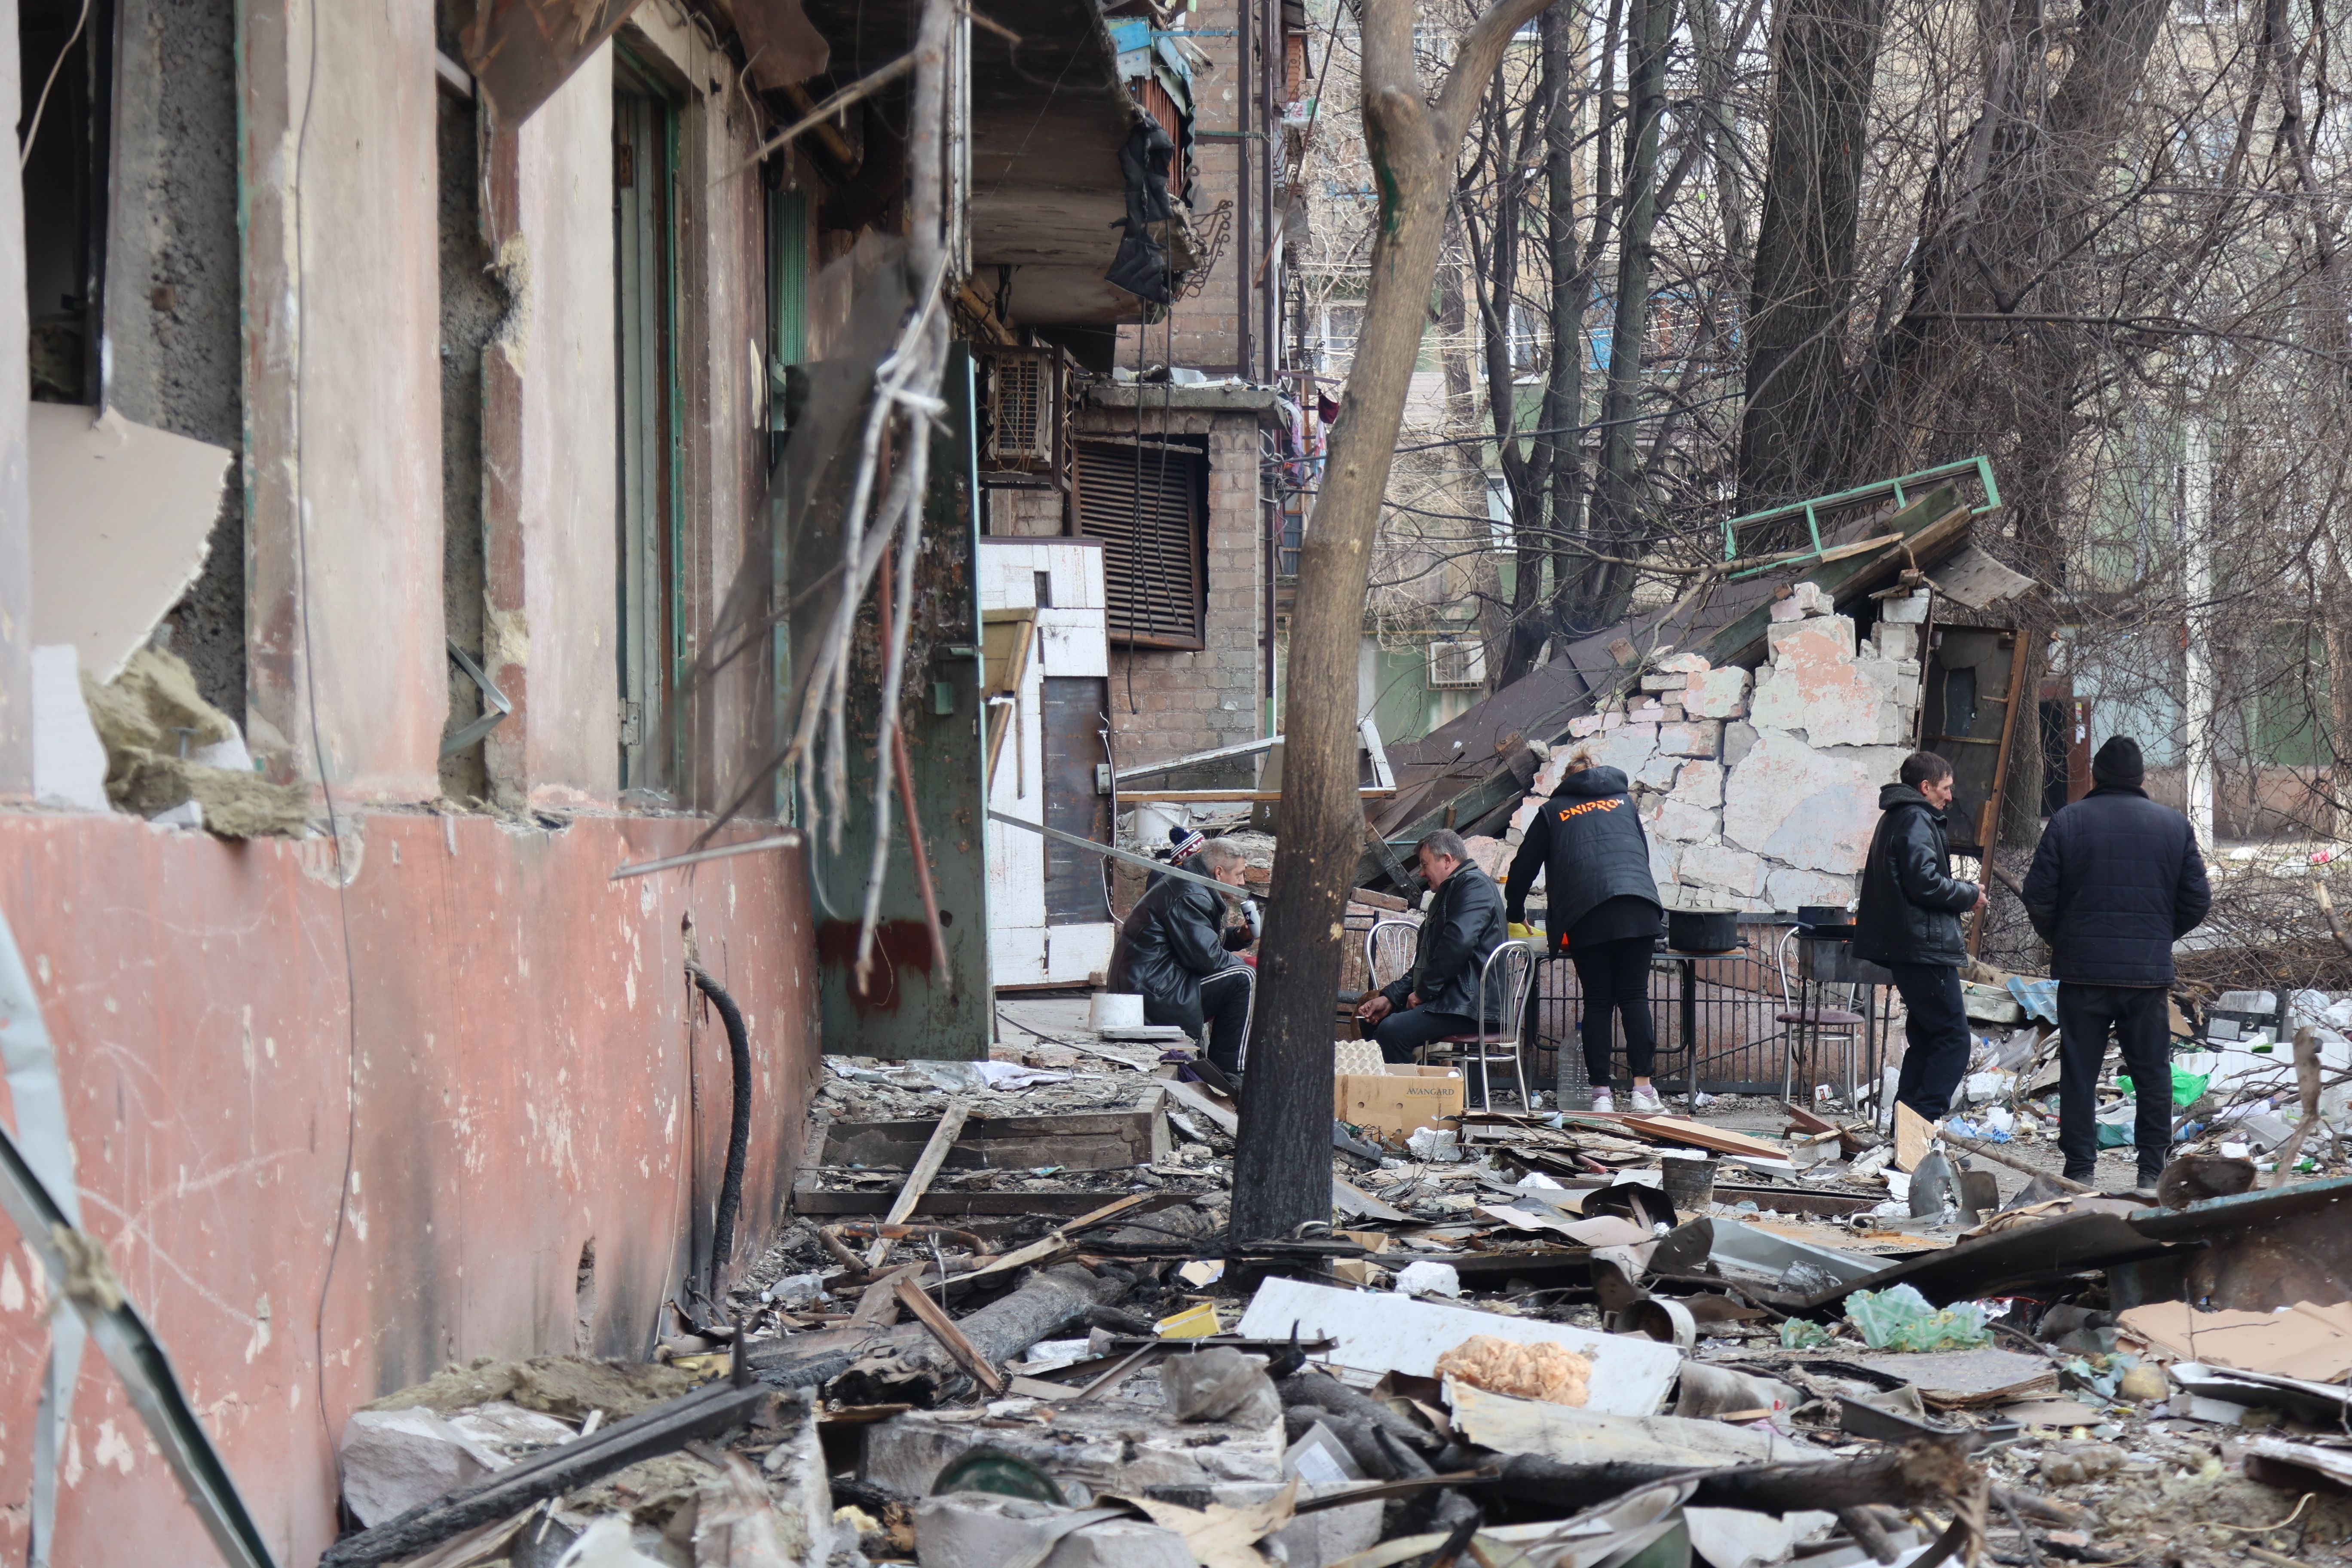   Widok zniszczonych budynków i pojazdów po ostrzale w ukraińskim mieście Mariupol pod kontrolą rosyjskich wojskowych i prorosyjskich separatystów, 29 marca.